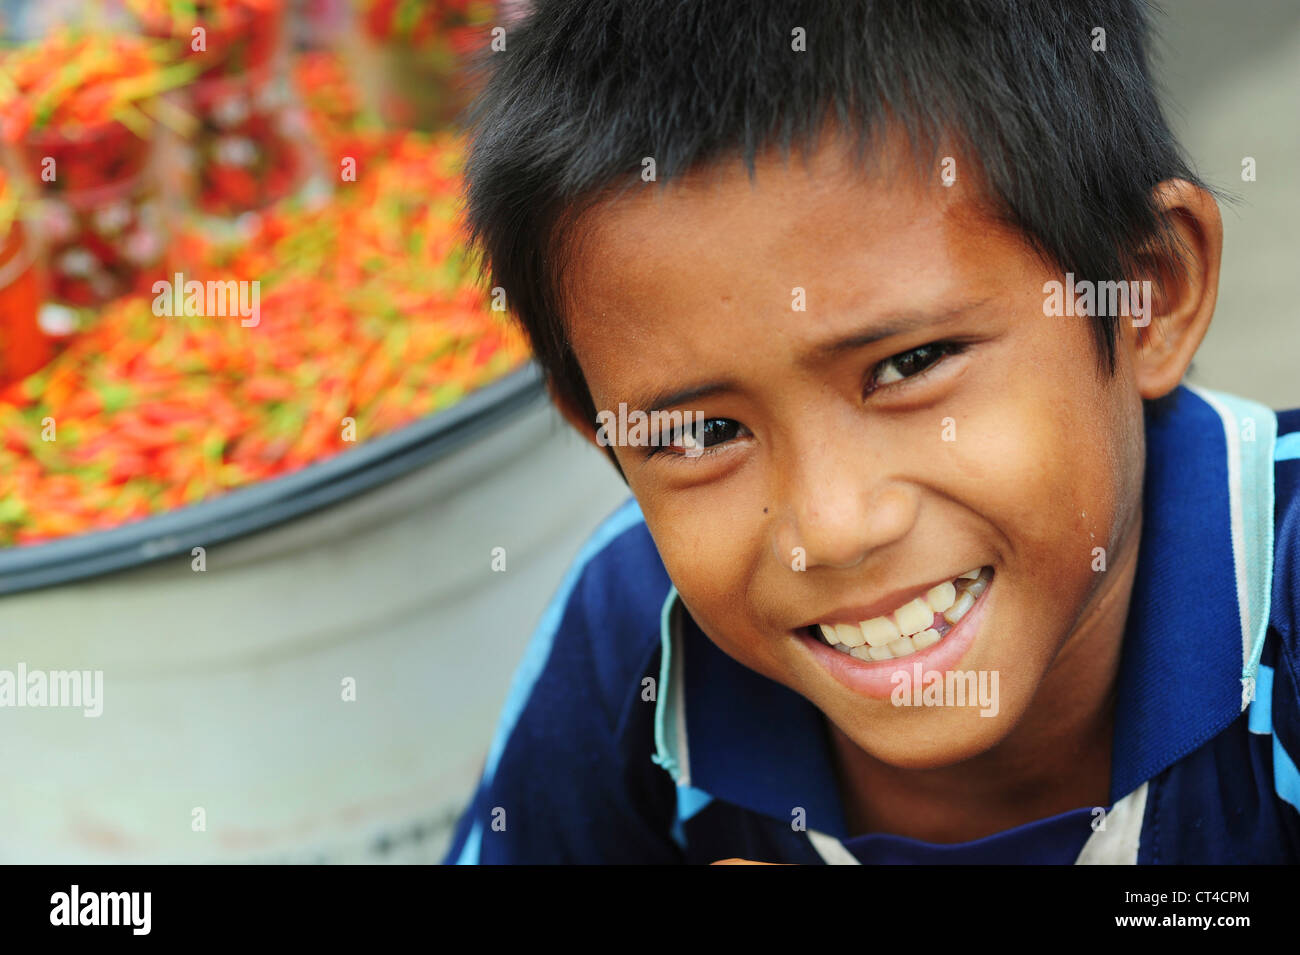 Malaysia, Borneo, Semporna, portrait of smiling boy Stock Photo